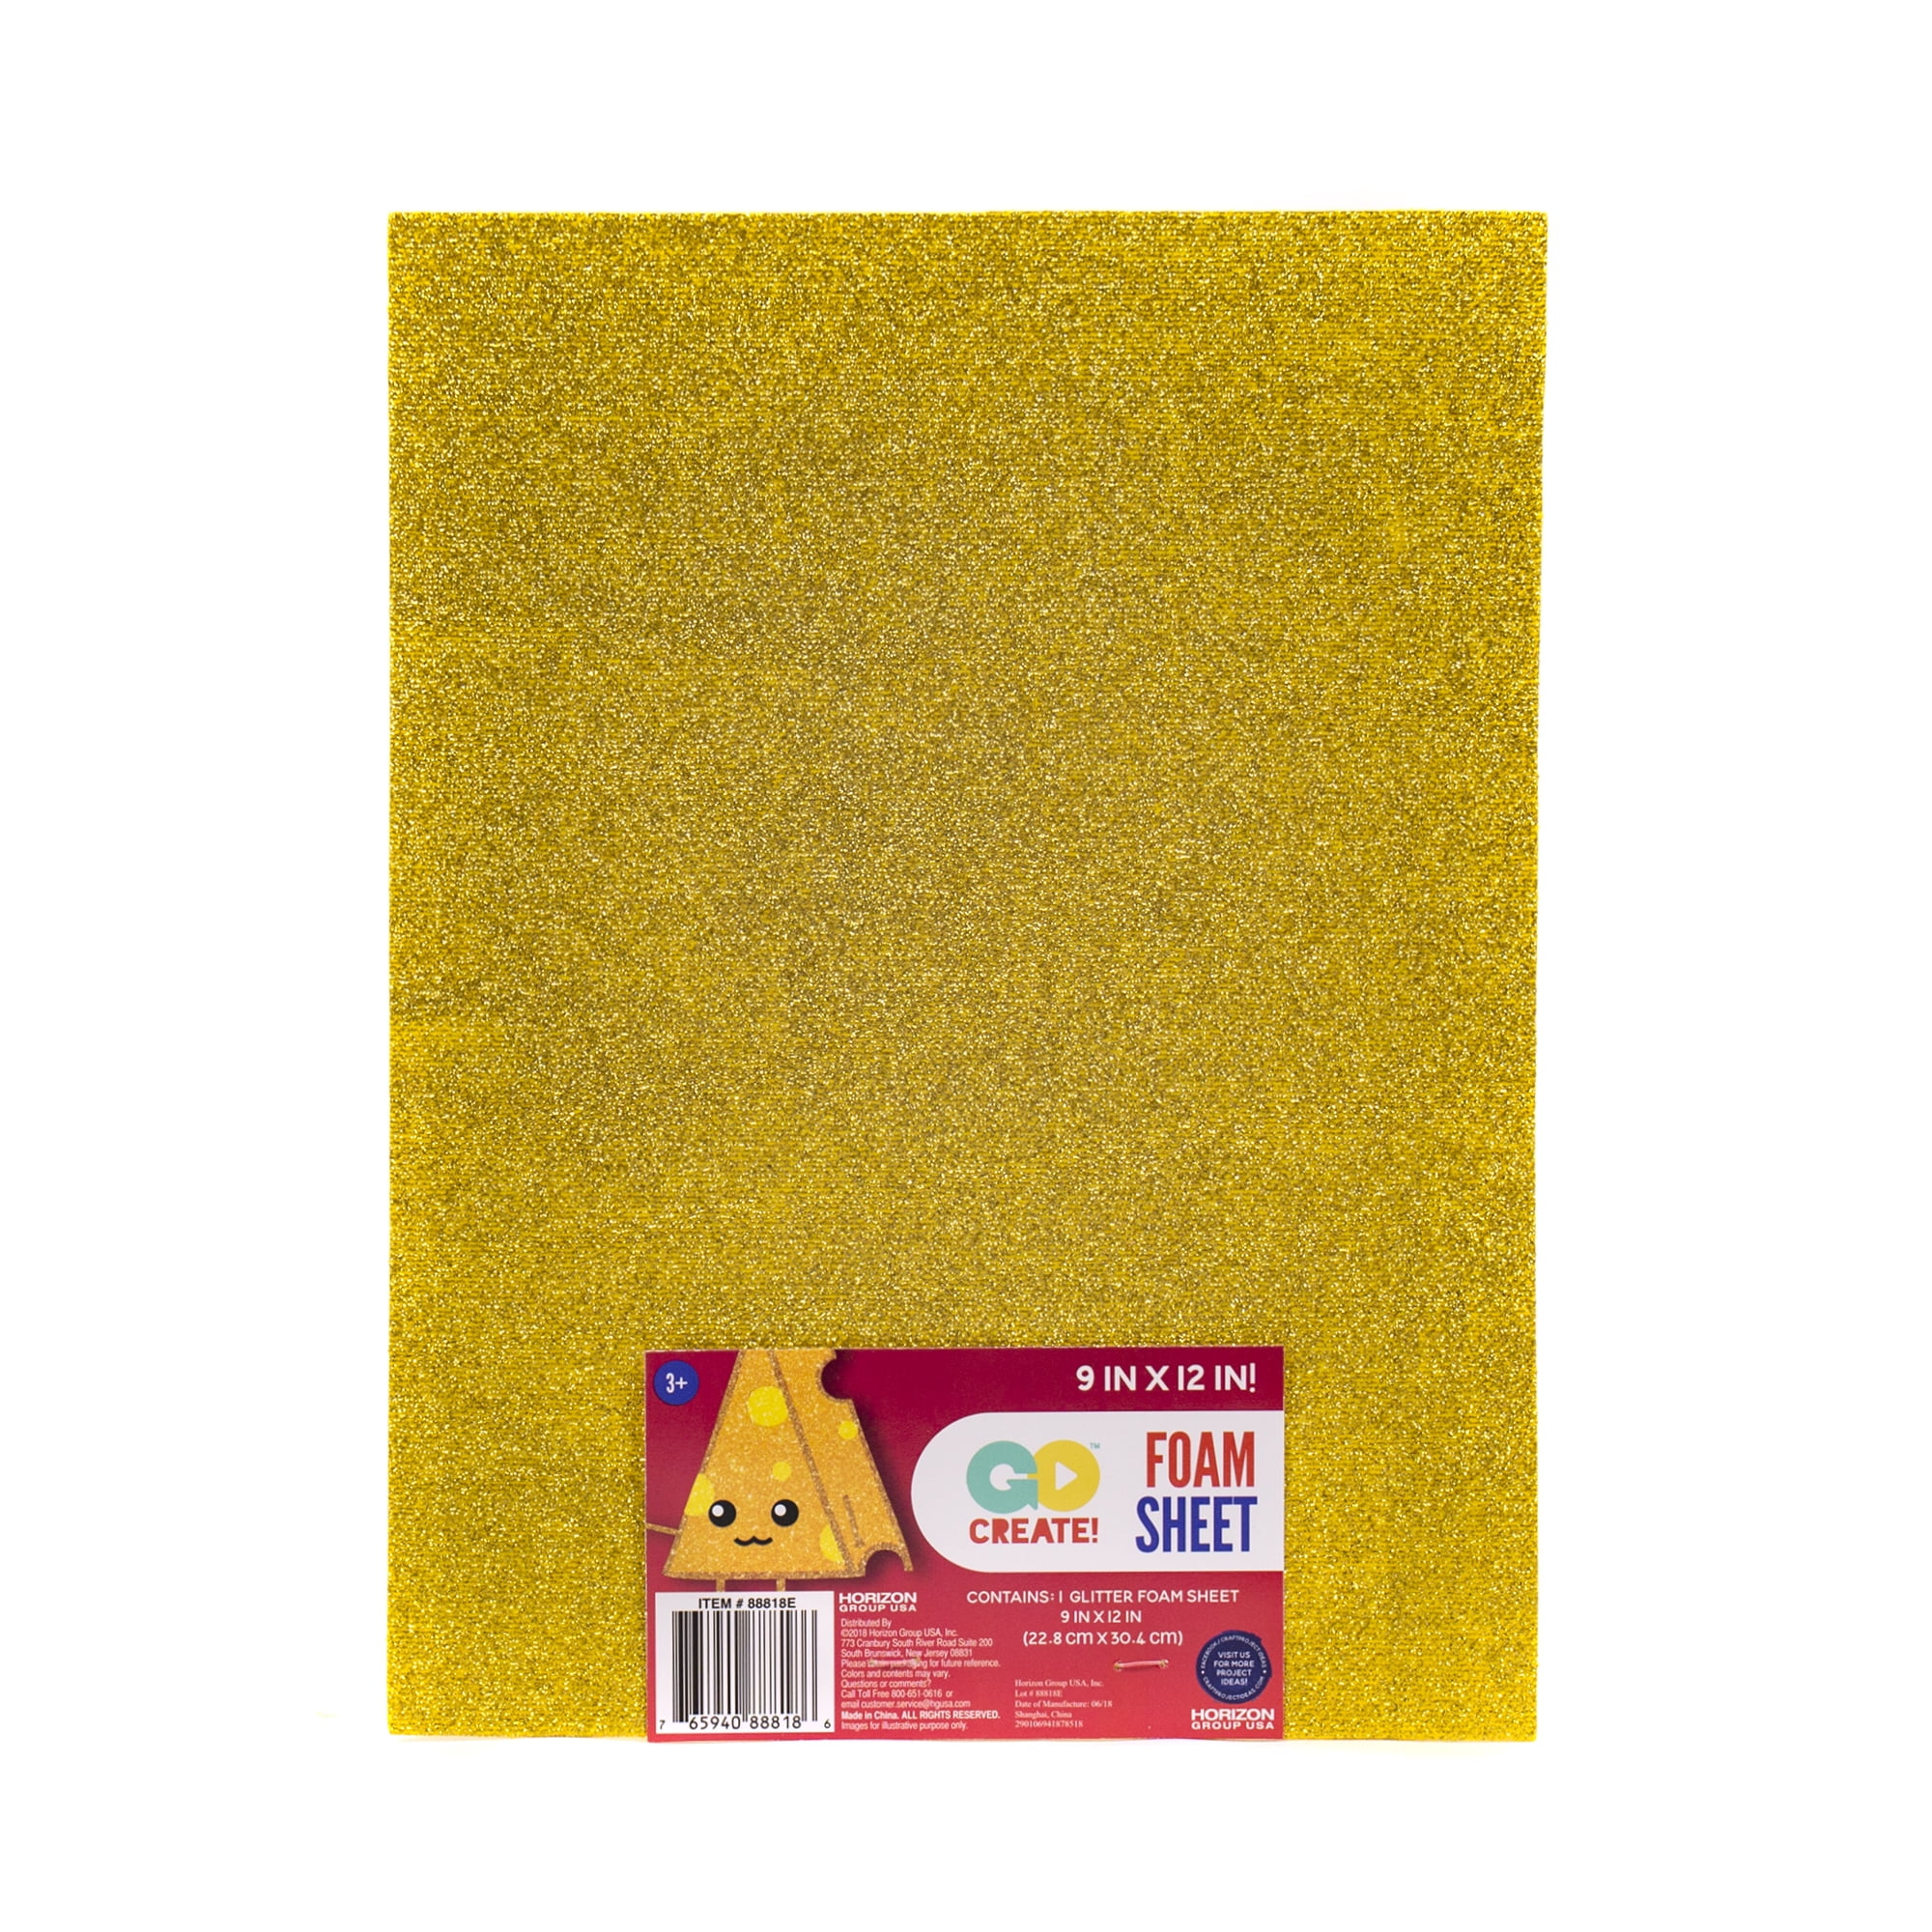 Go Create Foam 9" x 12" Glitter Gold Sheet, Craft Paper, 1 Each, 3+